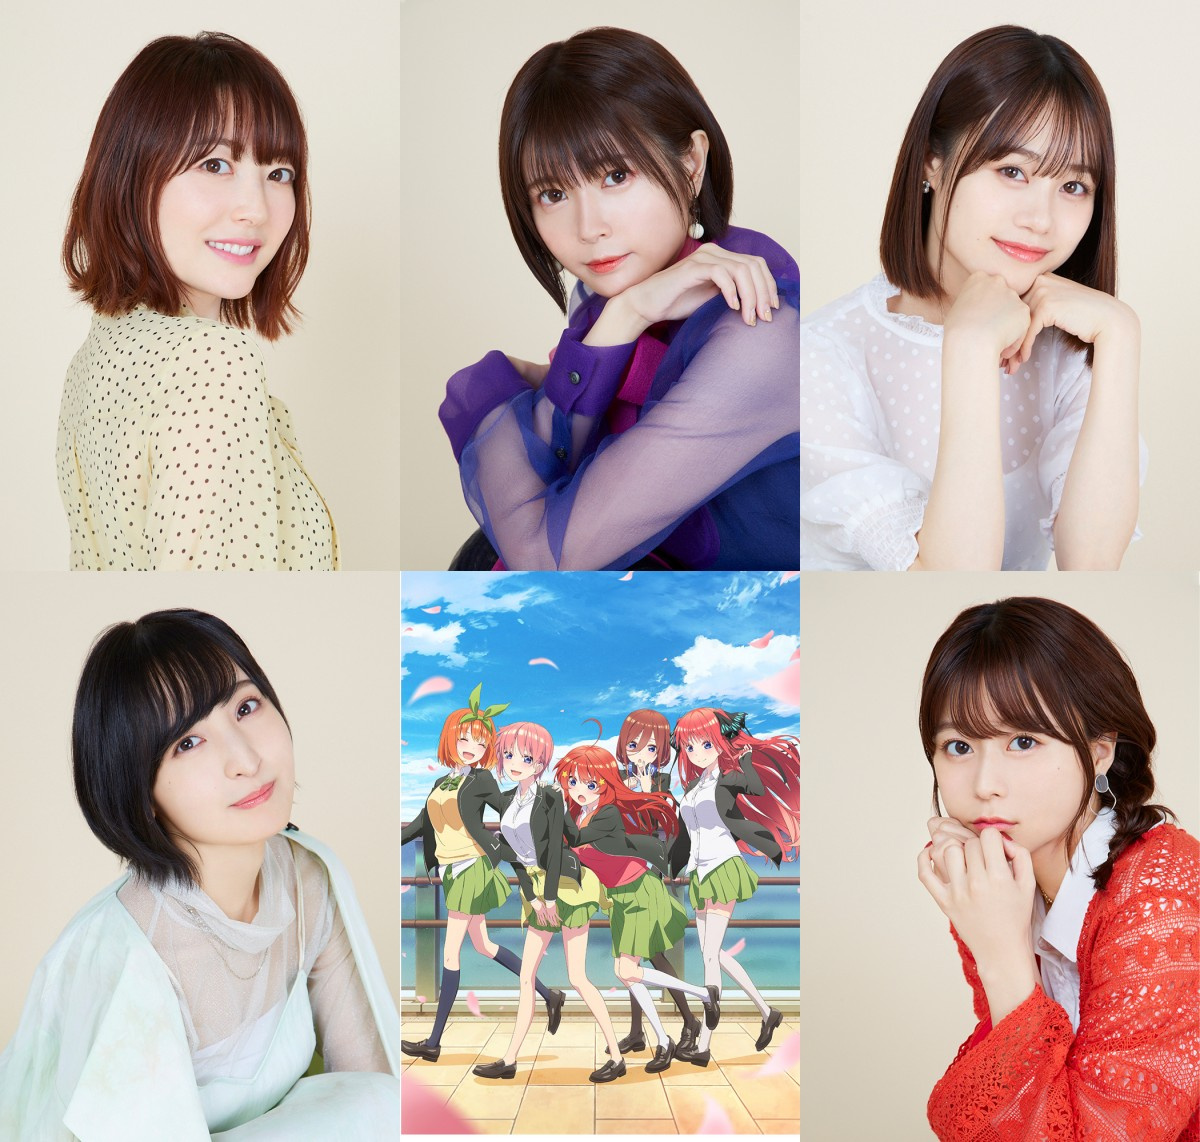 五等分の花嫁 声優 第1話感想 楽曲コメント公開 風太郎の成長も一緒に応援して Oricon News